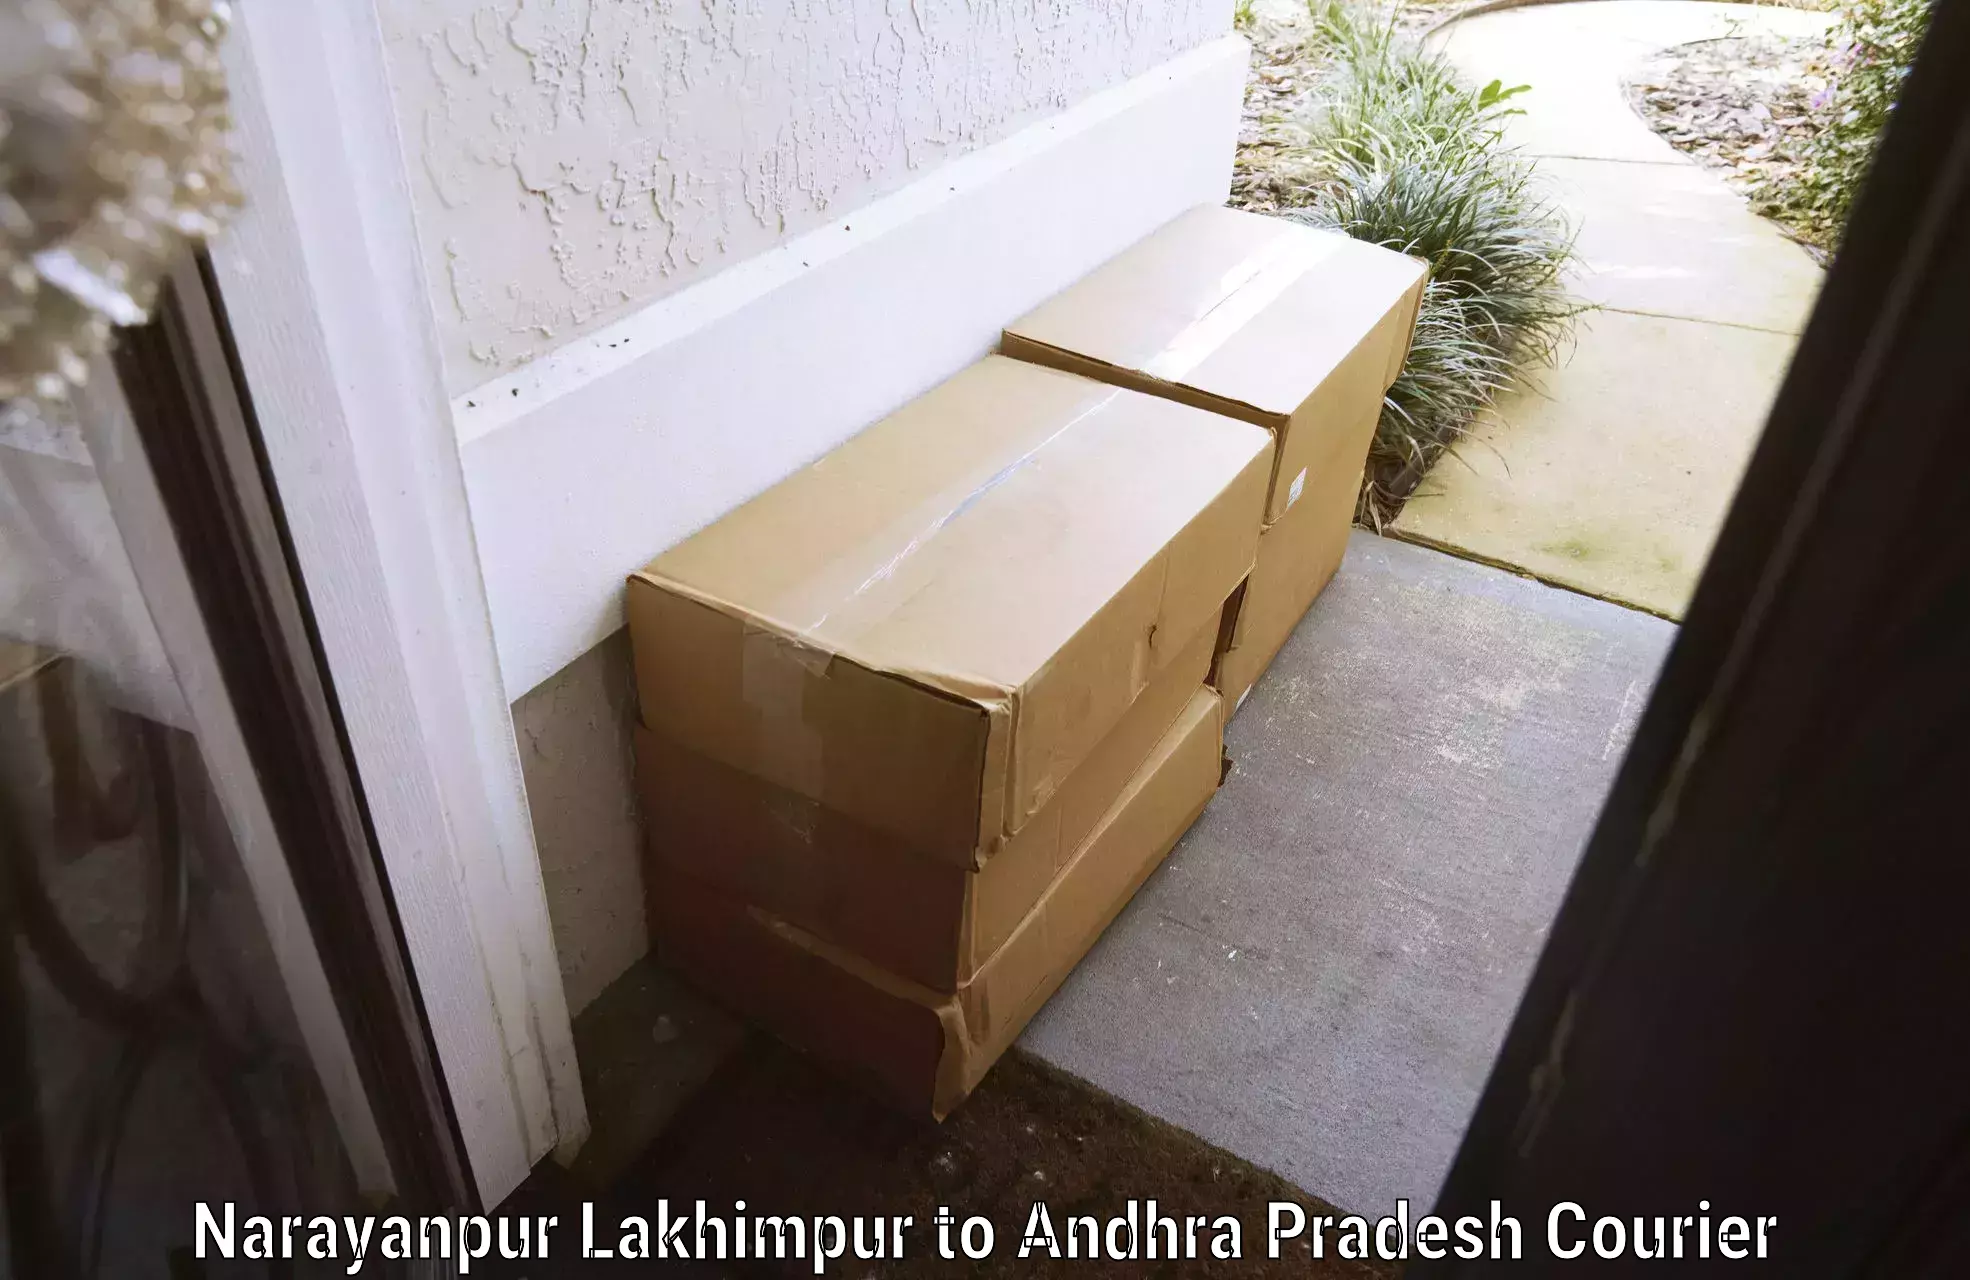 Baggage courier logistics Narayanpur Lakhimpur to Veldurthi